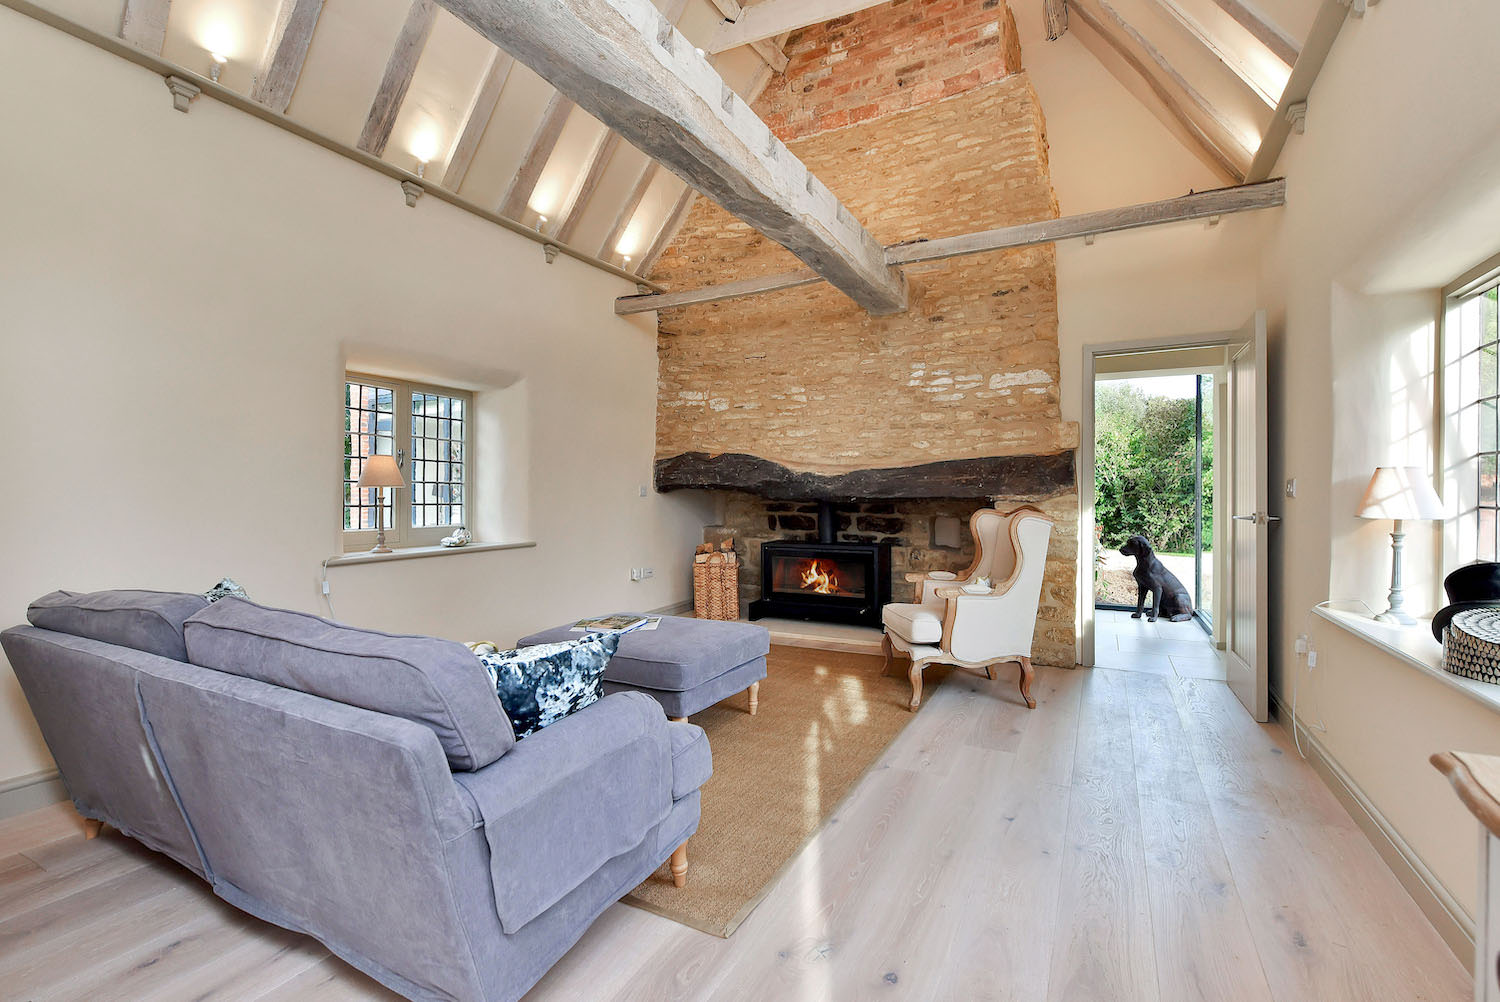 Aubourn Thatched Cottage interior design